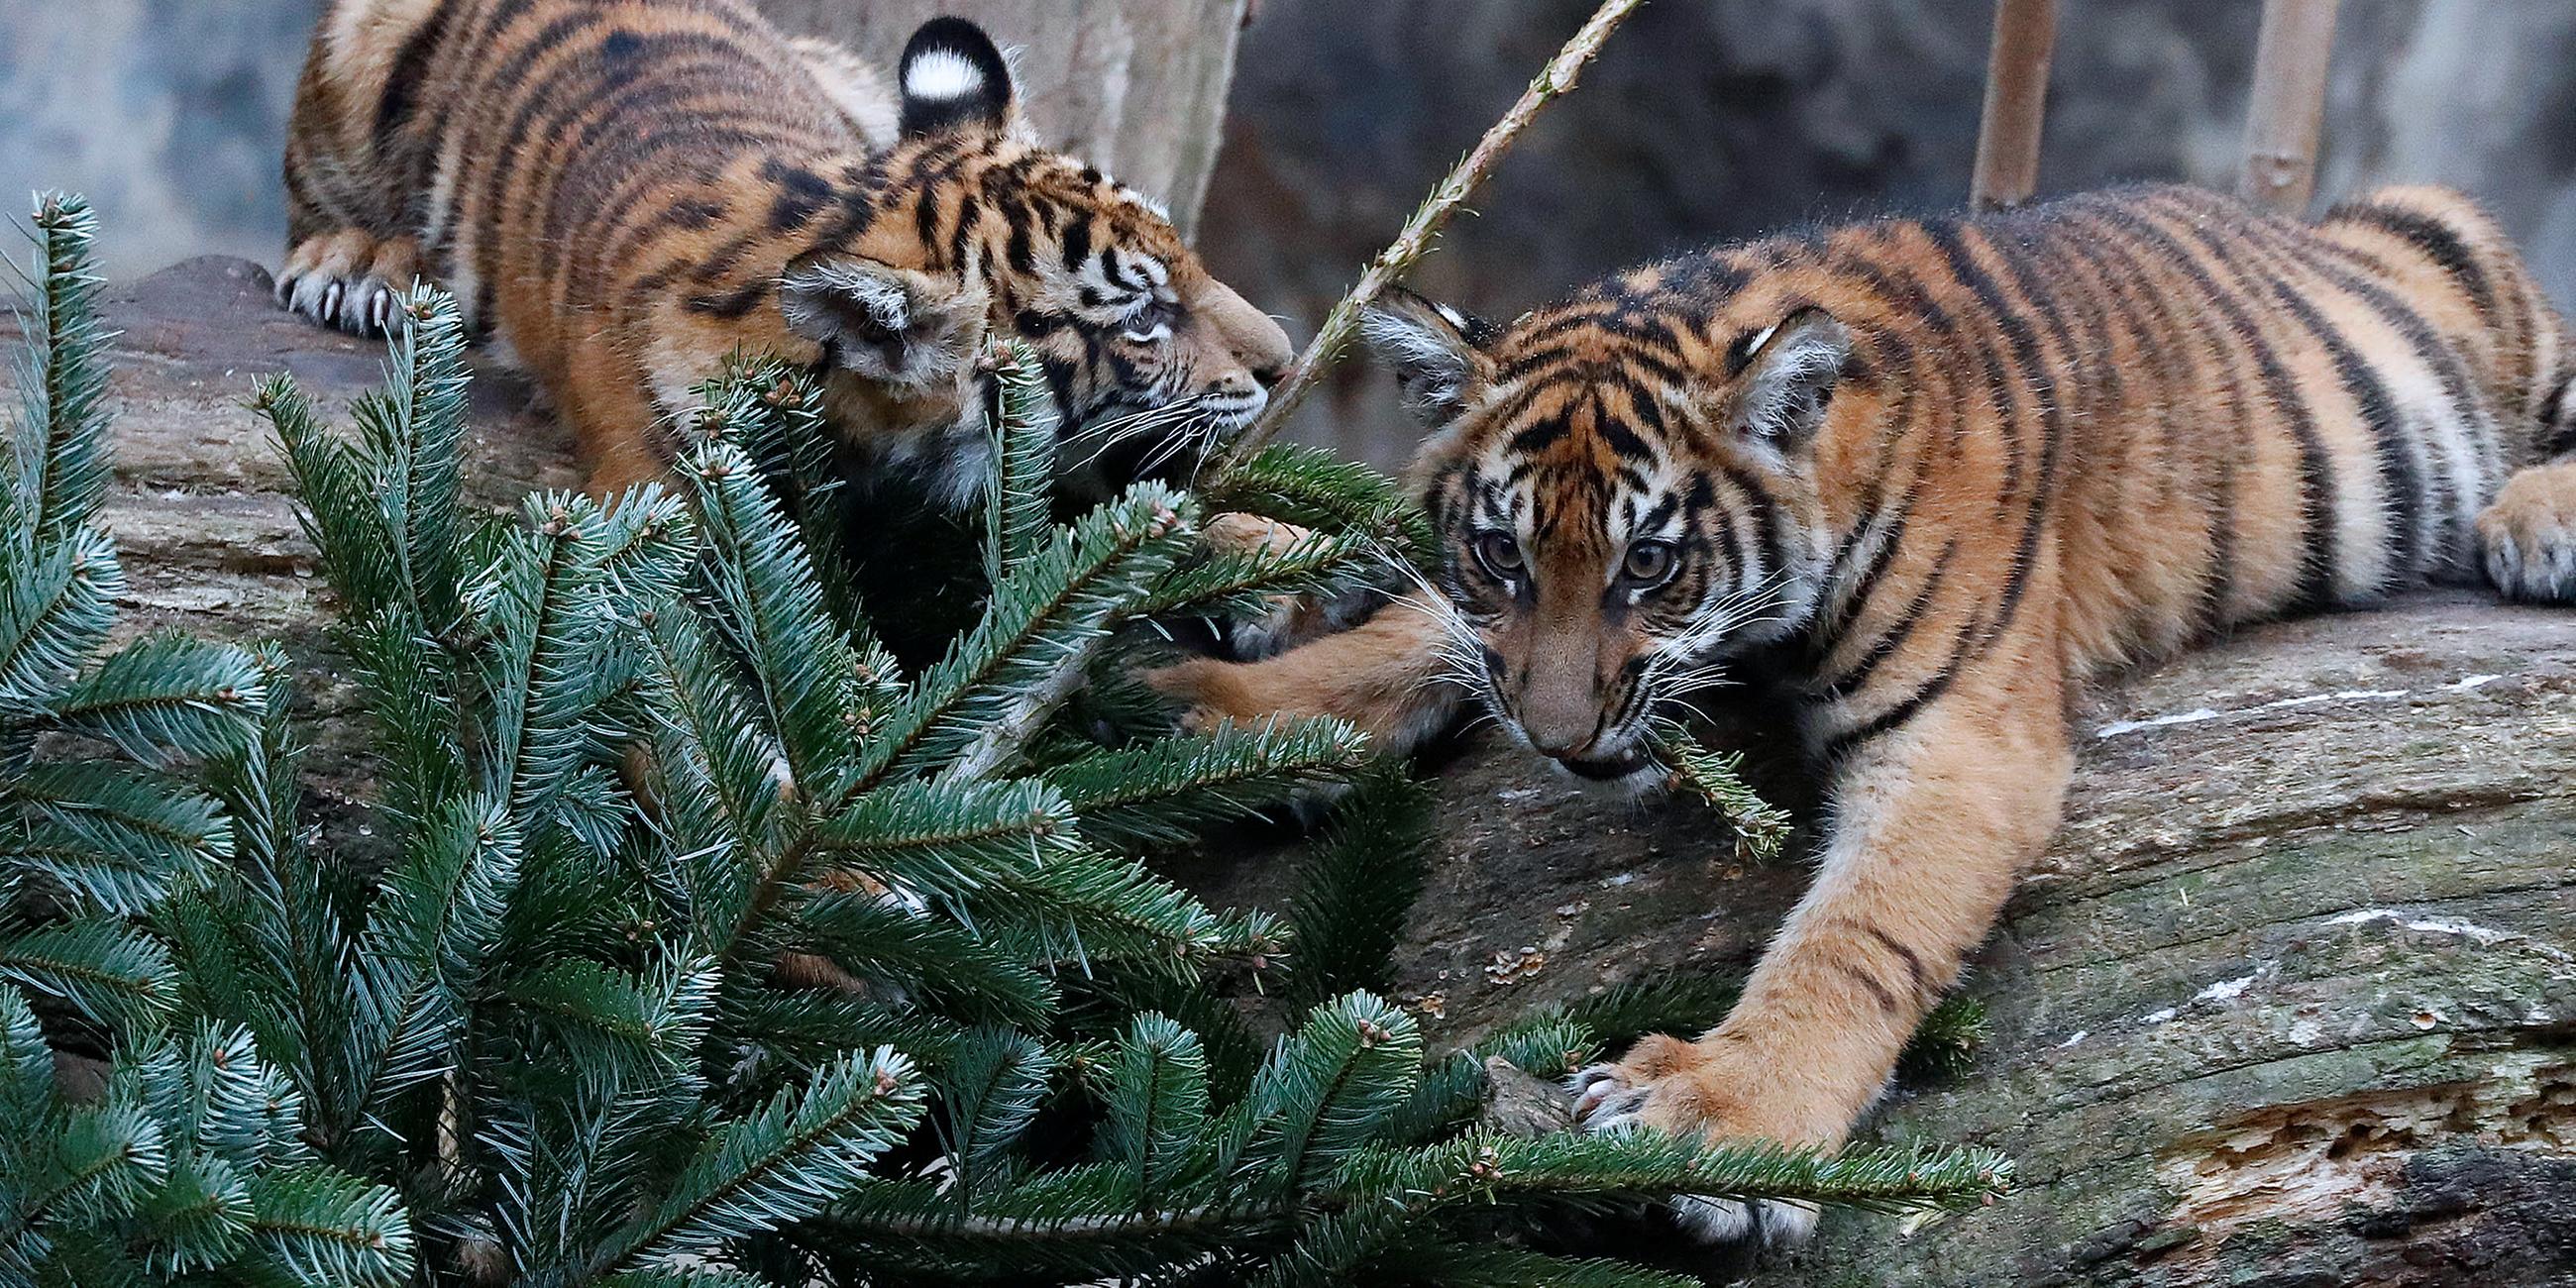 Junge Sumatra Tiger spielen mit einem Weihnachtsbaum.